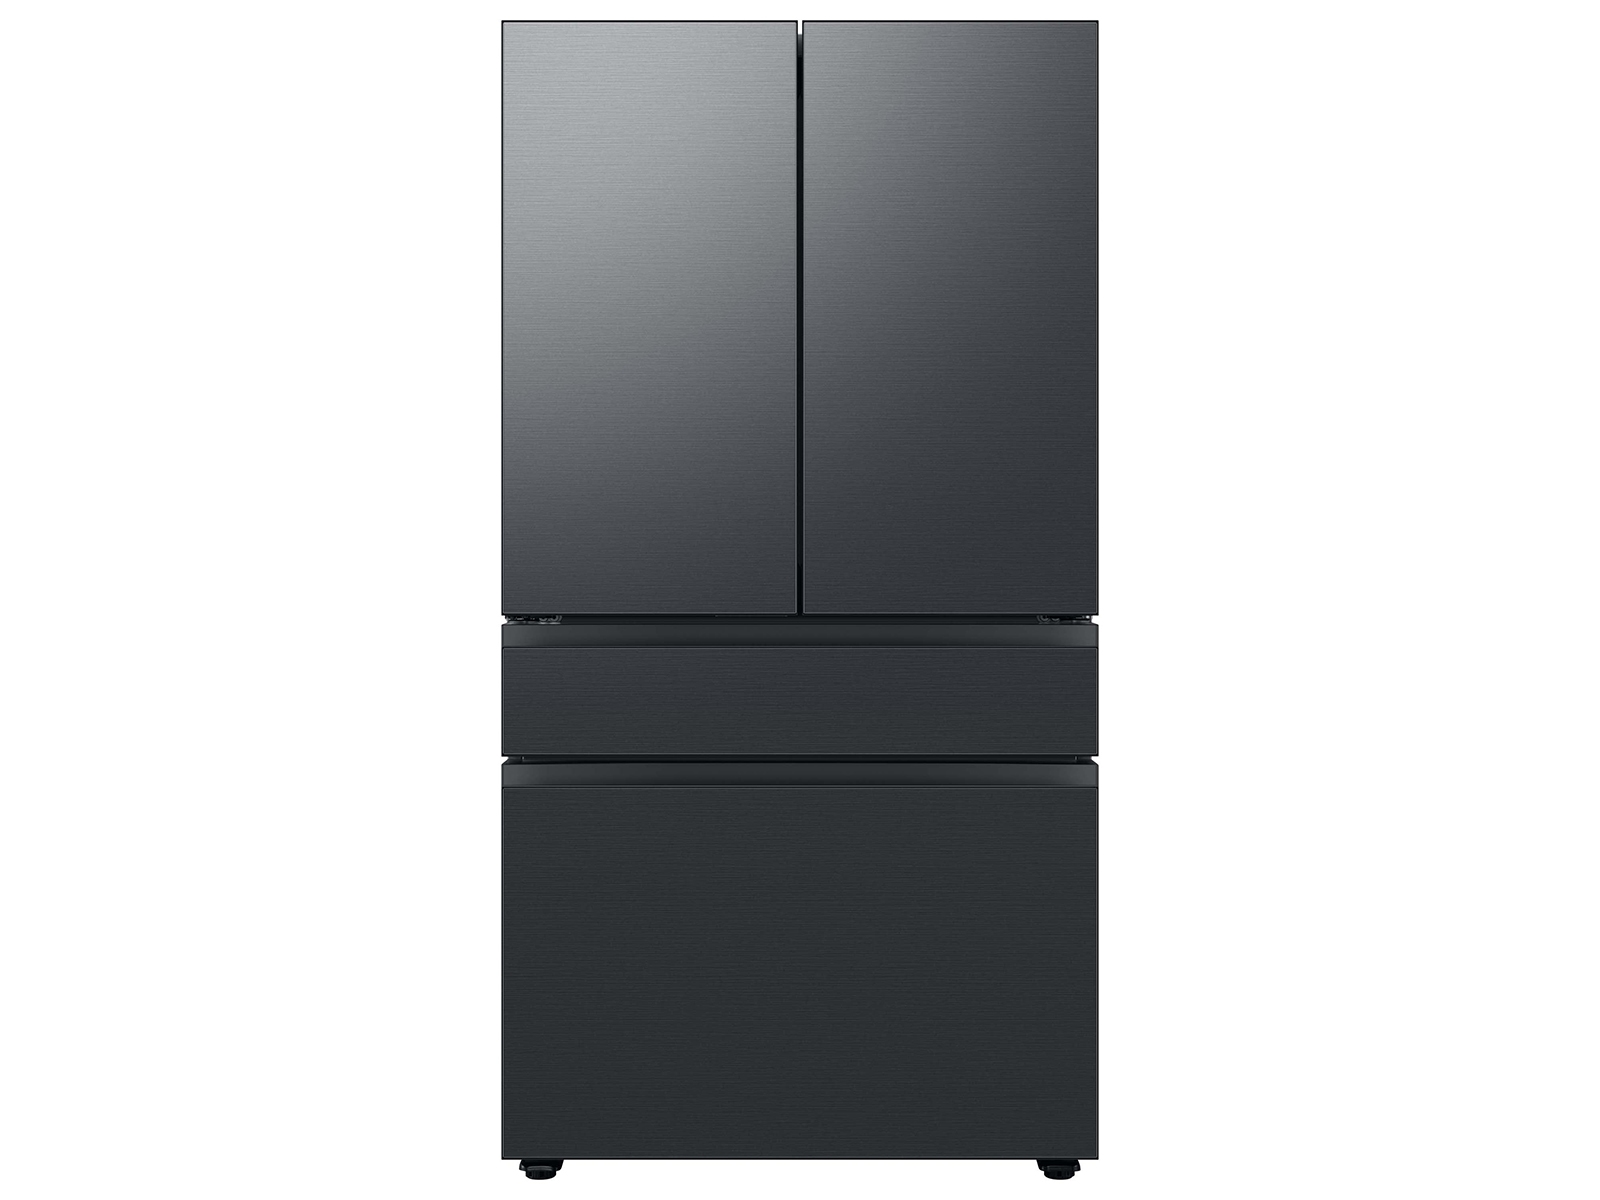 Samsung Bespoke 4-Door French Door Refrigerator (23 cu. ft.) with Customizable Door Panel Colors and Beverage Center™ in Matte Black Steel